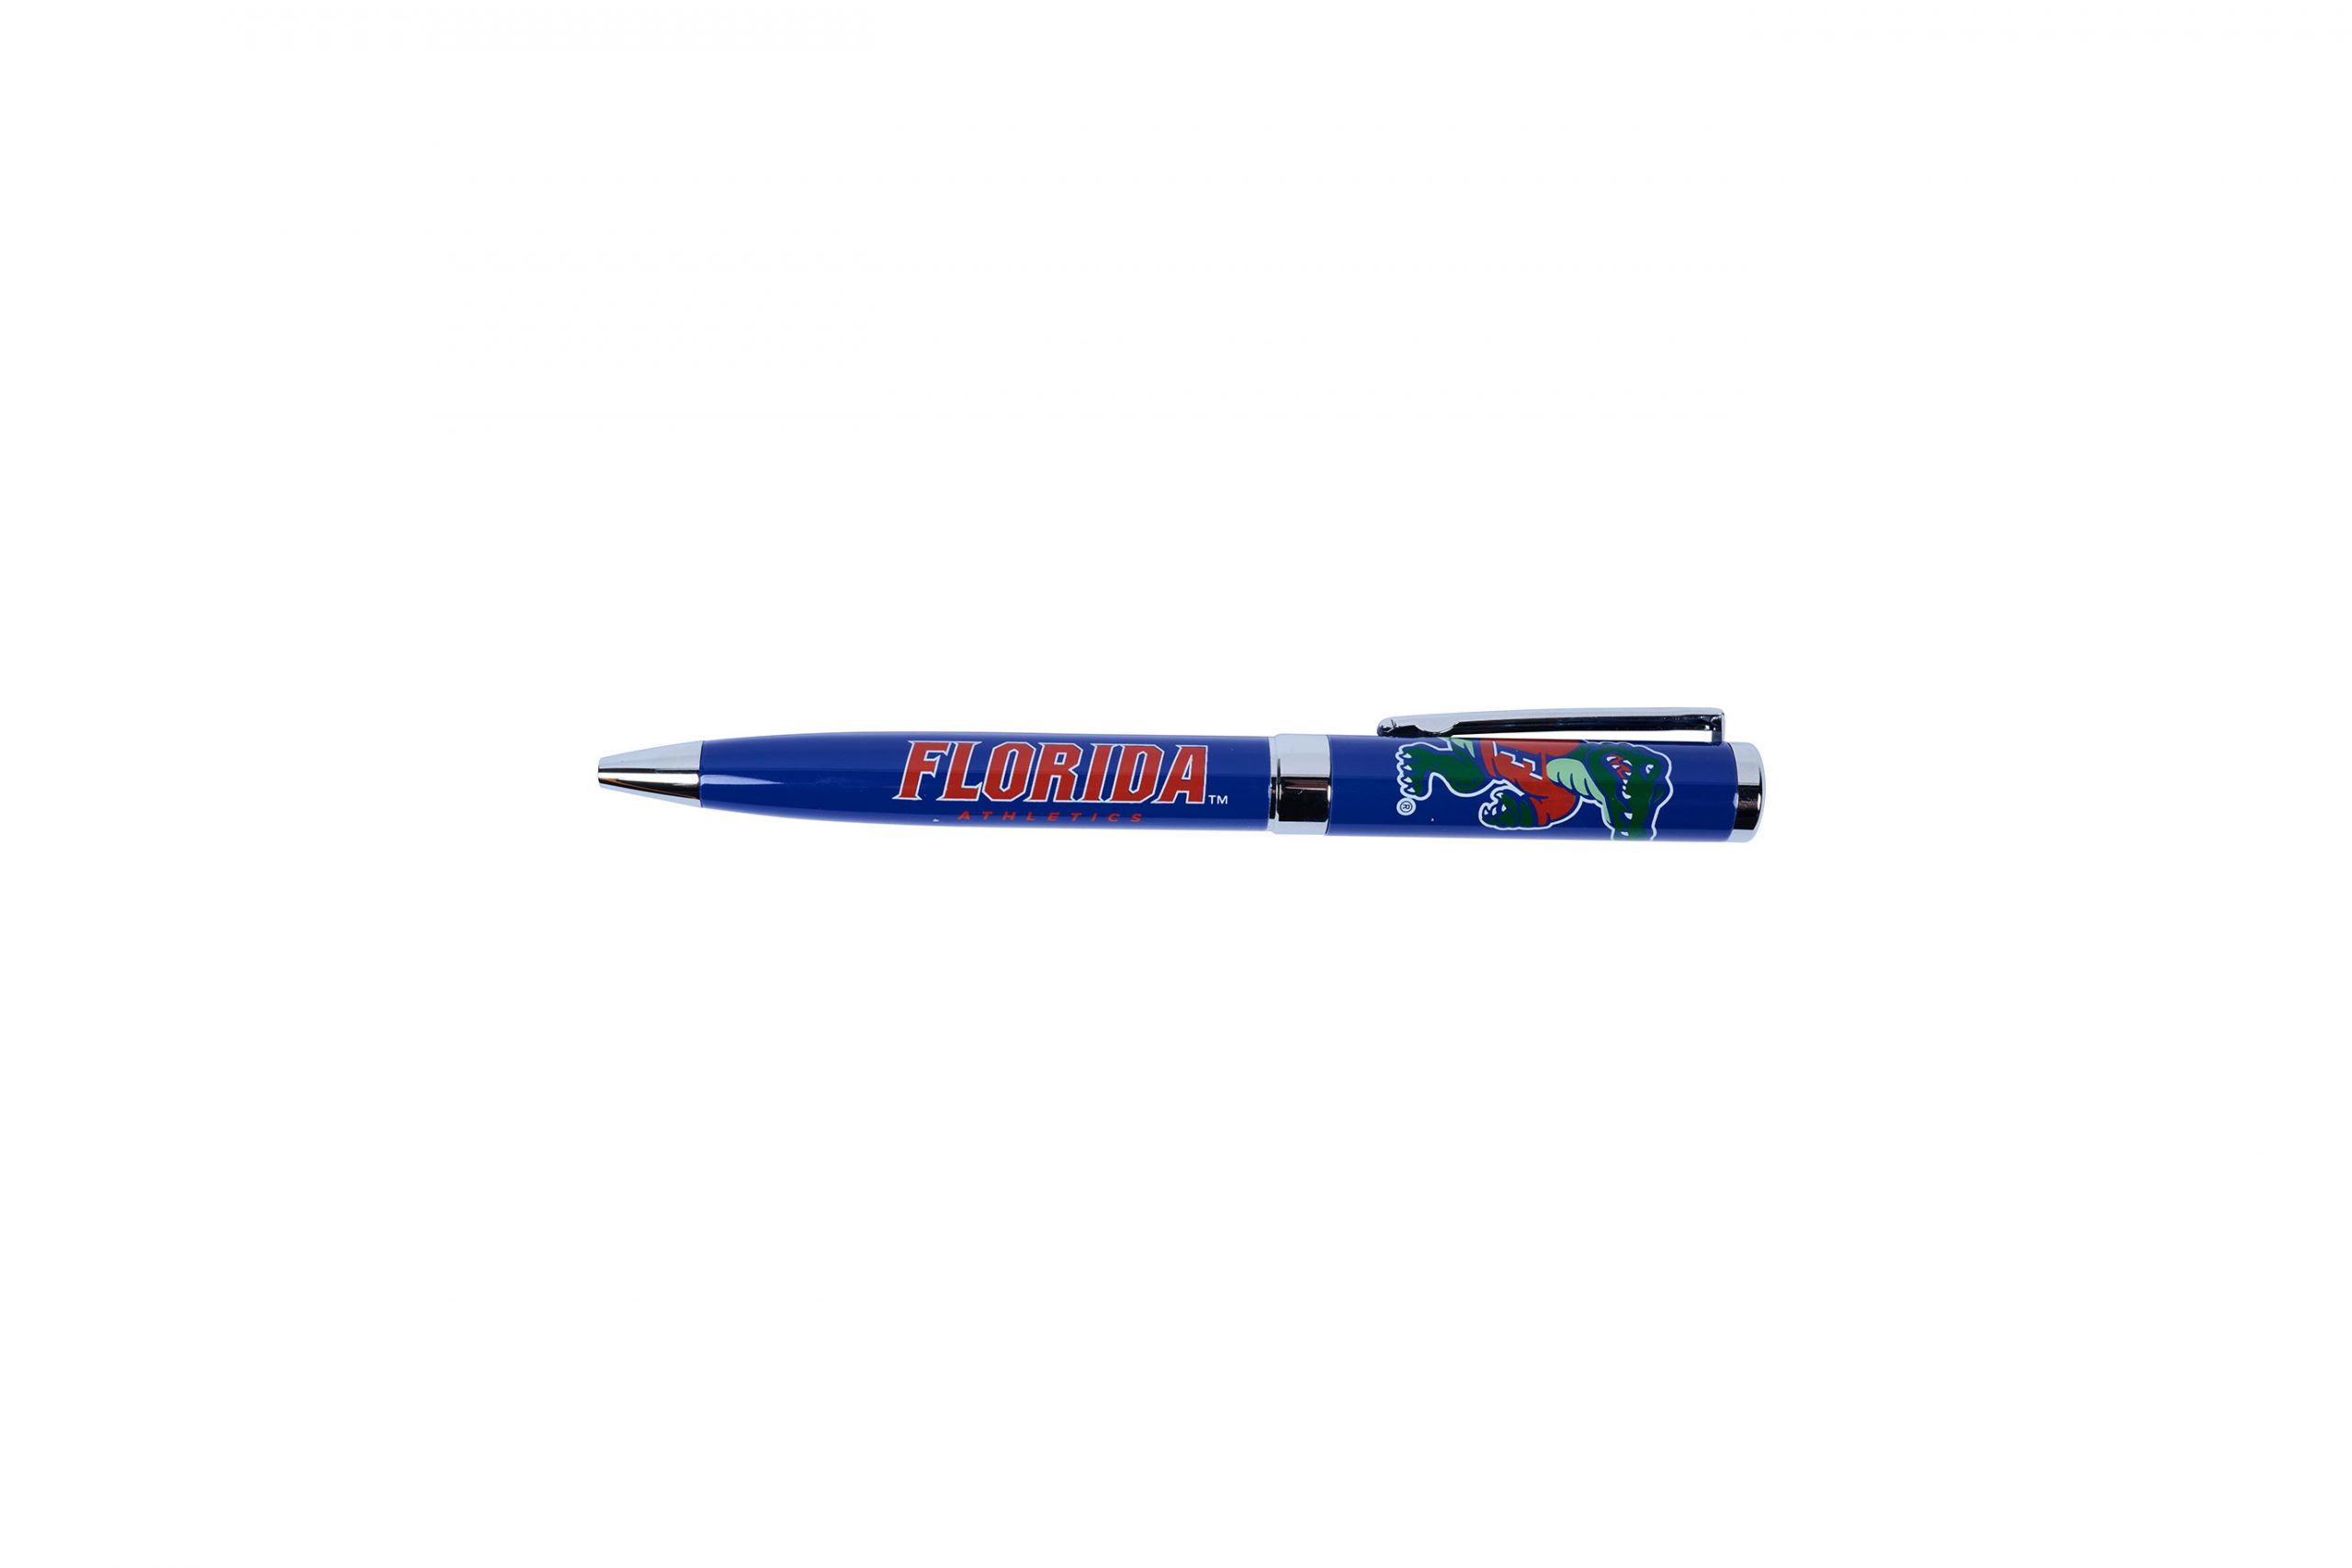 Florida pen